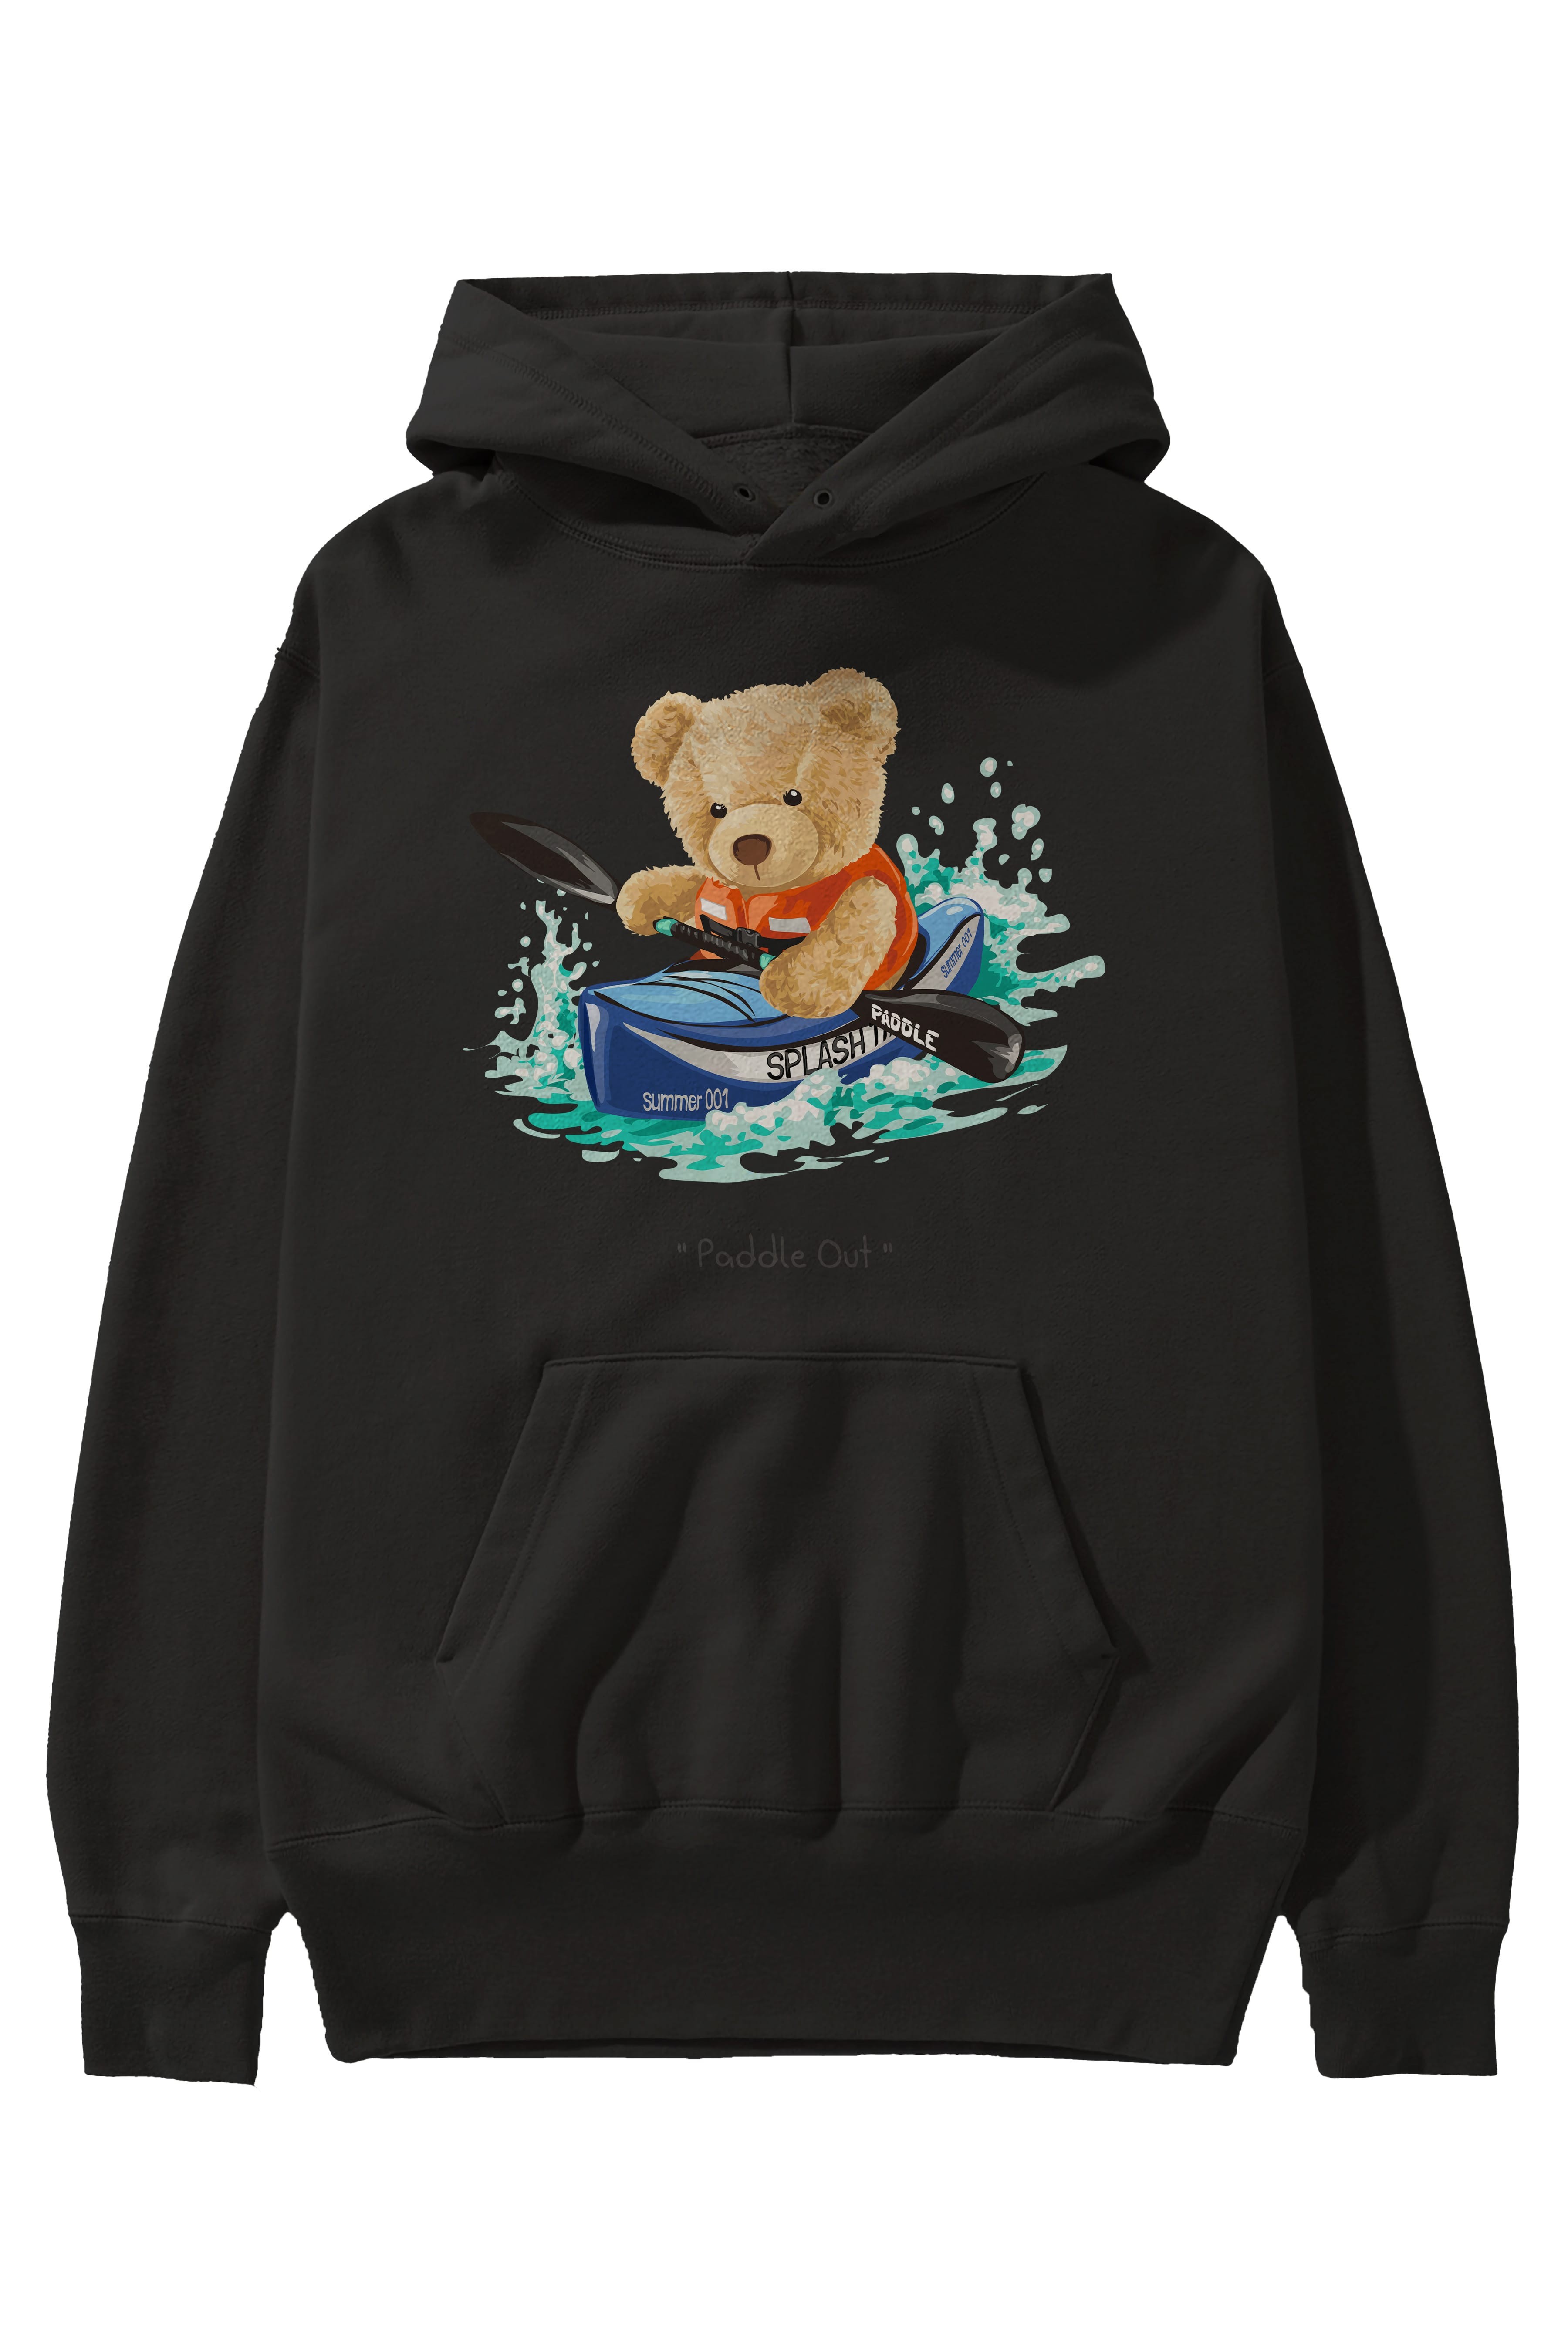 Teddy Bear Paddle Out Ön Baskılı Hoodie Oversize Kapüşonlu Sweatshirt Erkek Kadın Unisex